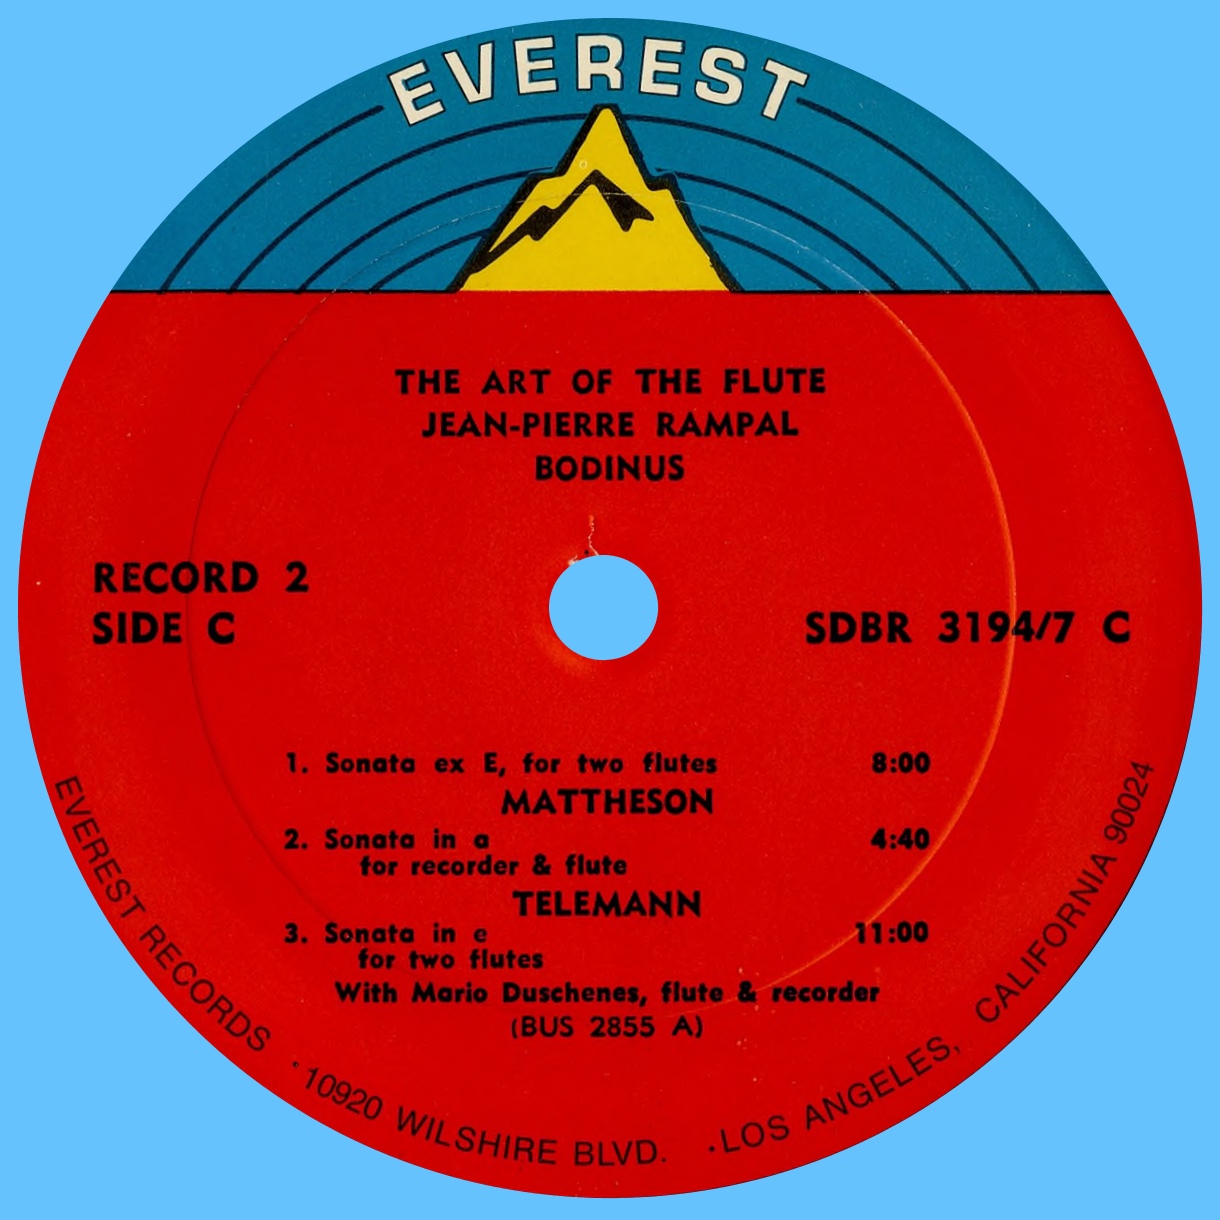 Étiquette verso du 2e disque du coffret Everest 3194-7